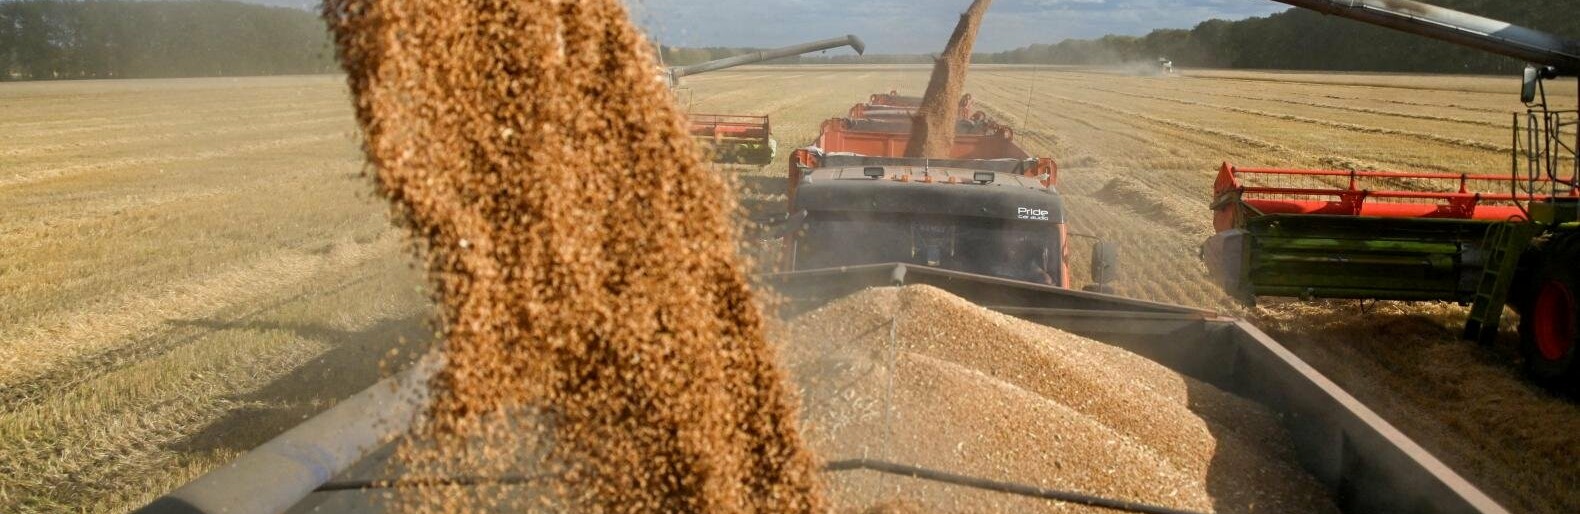 У Запорізькій області окупанти викрали вже 1,4 мільйона тонн зерна